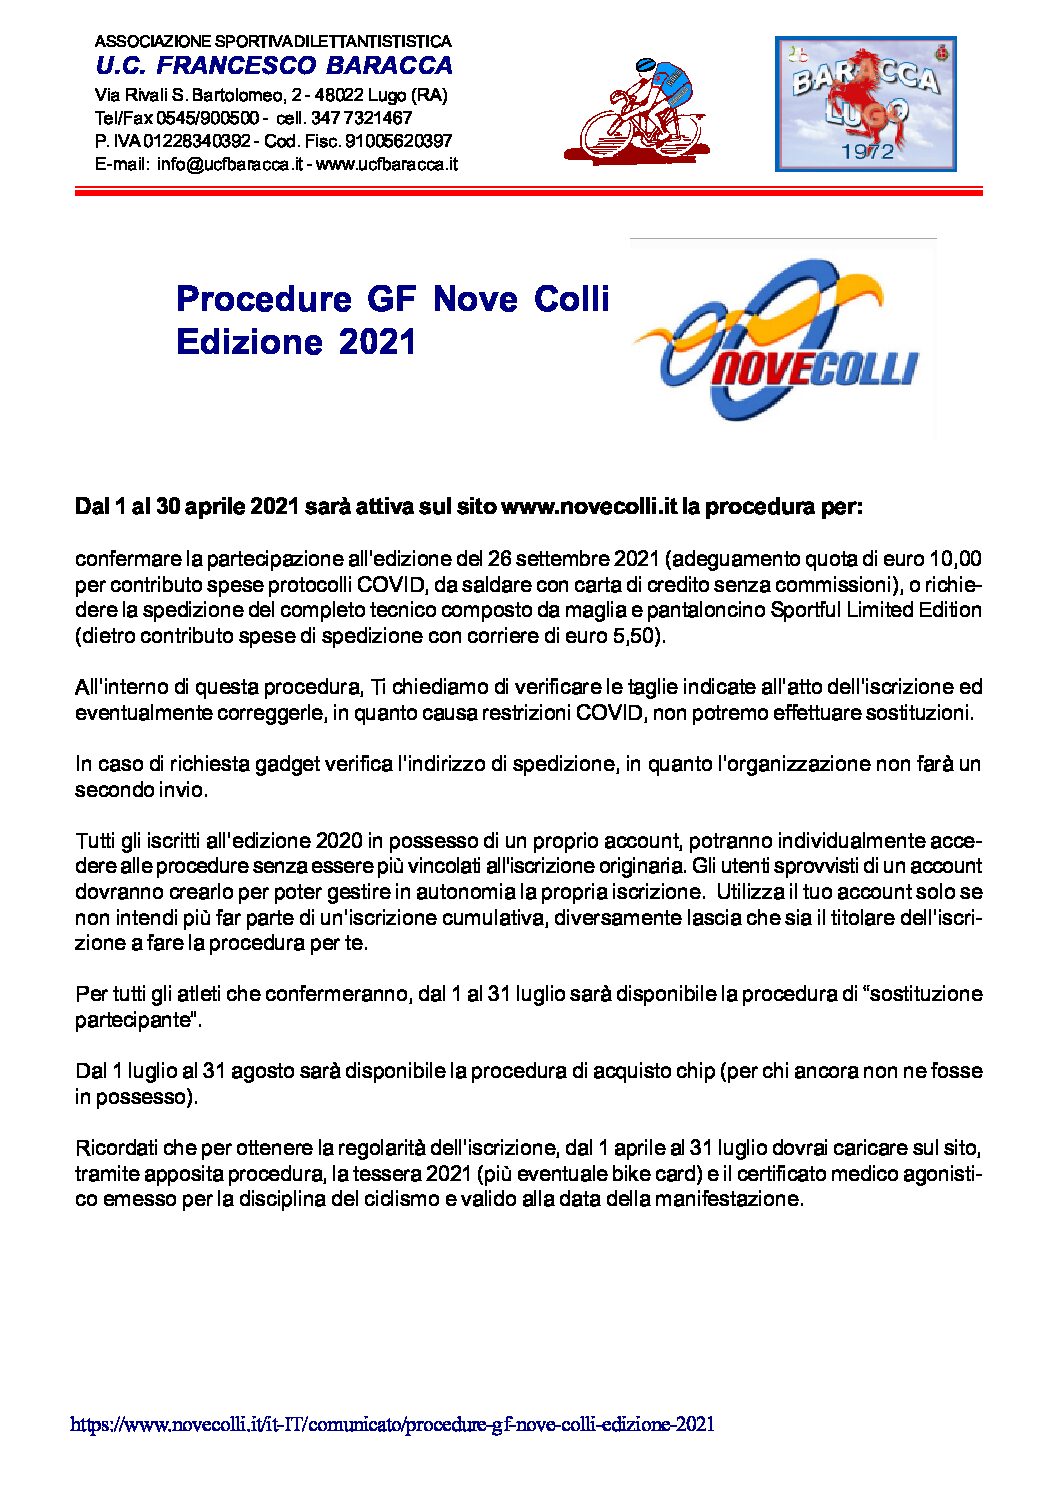 Procedure GF Nove Colli 2021 pdf